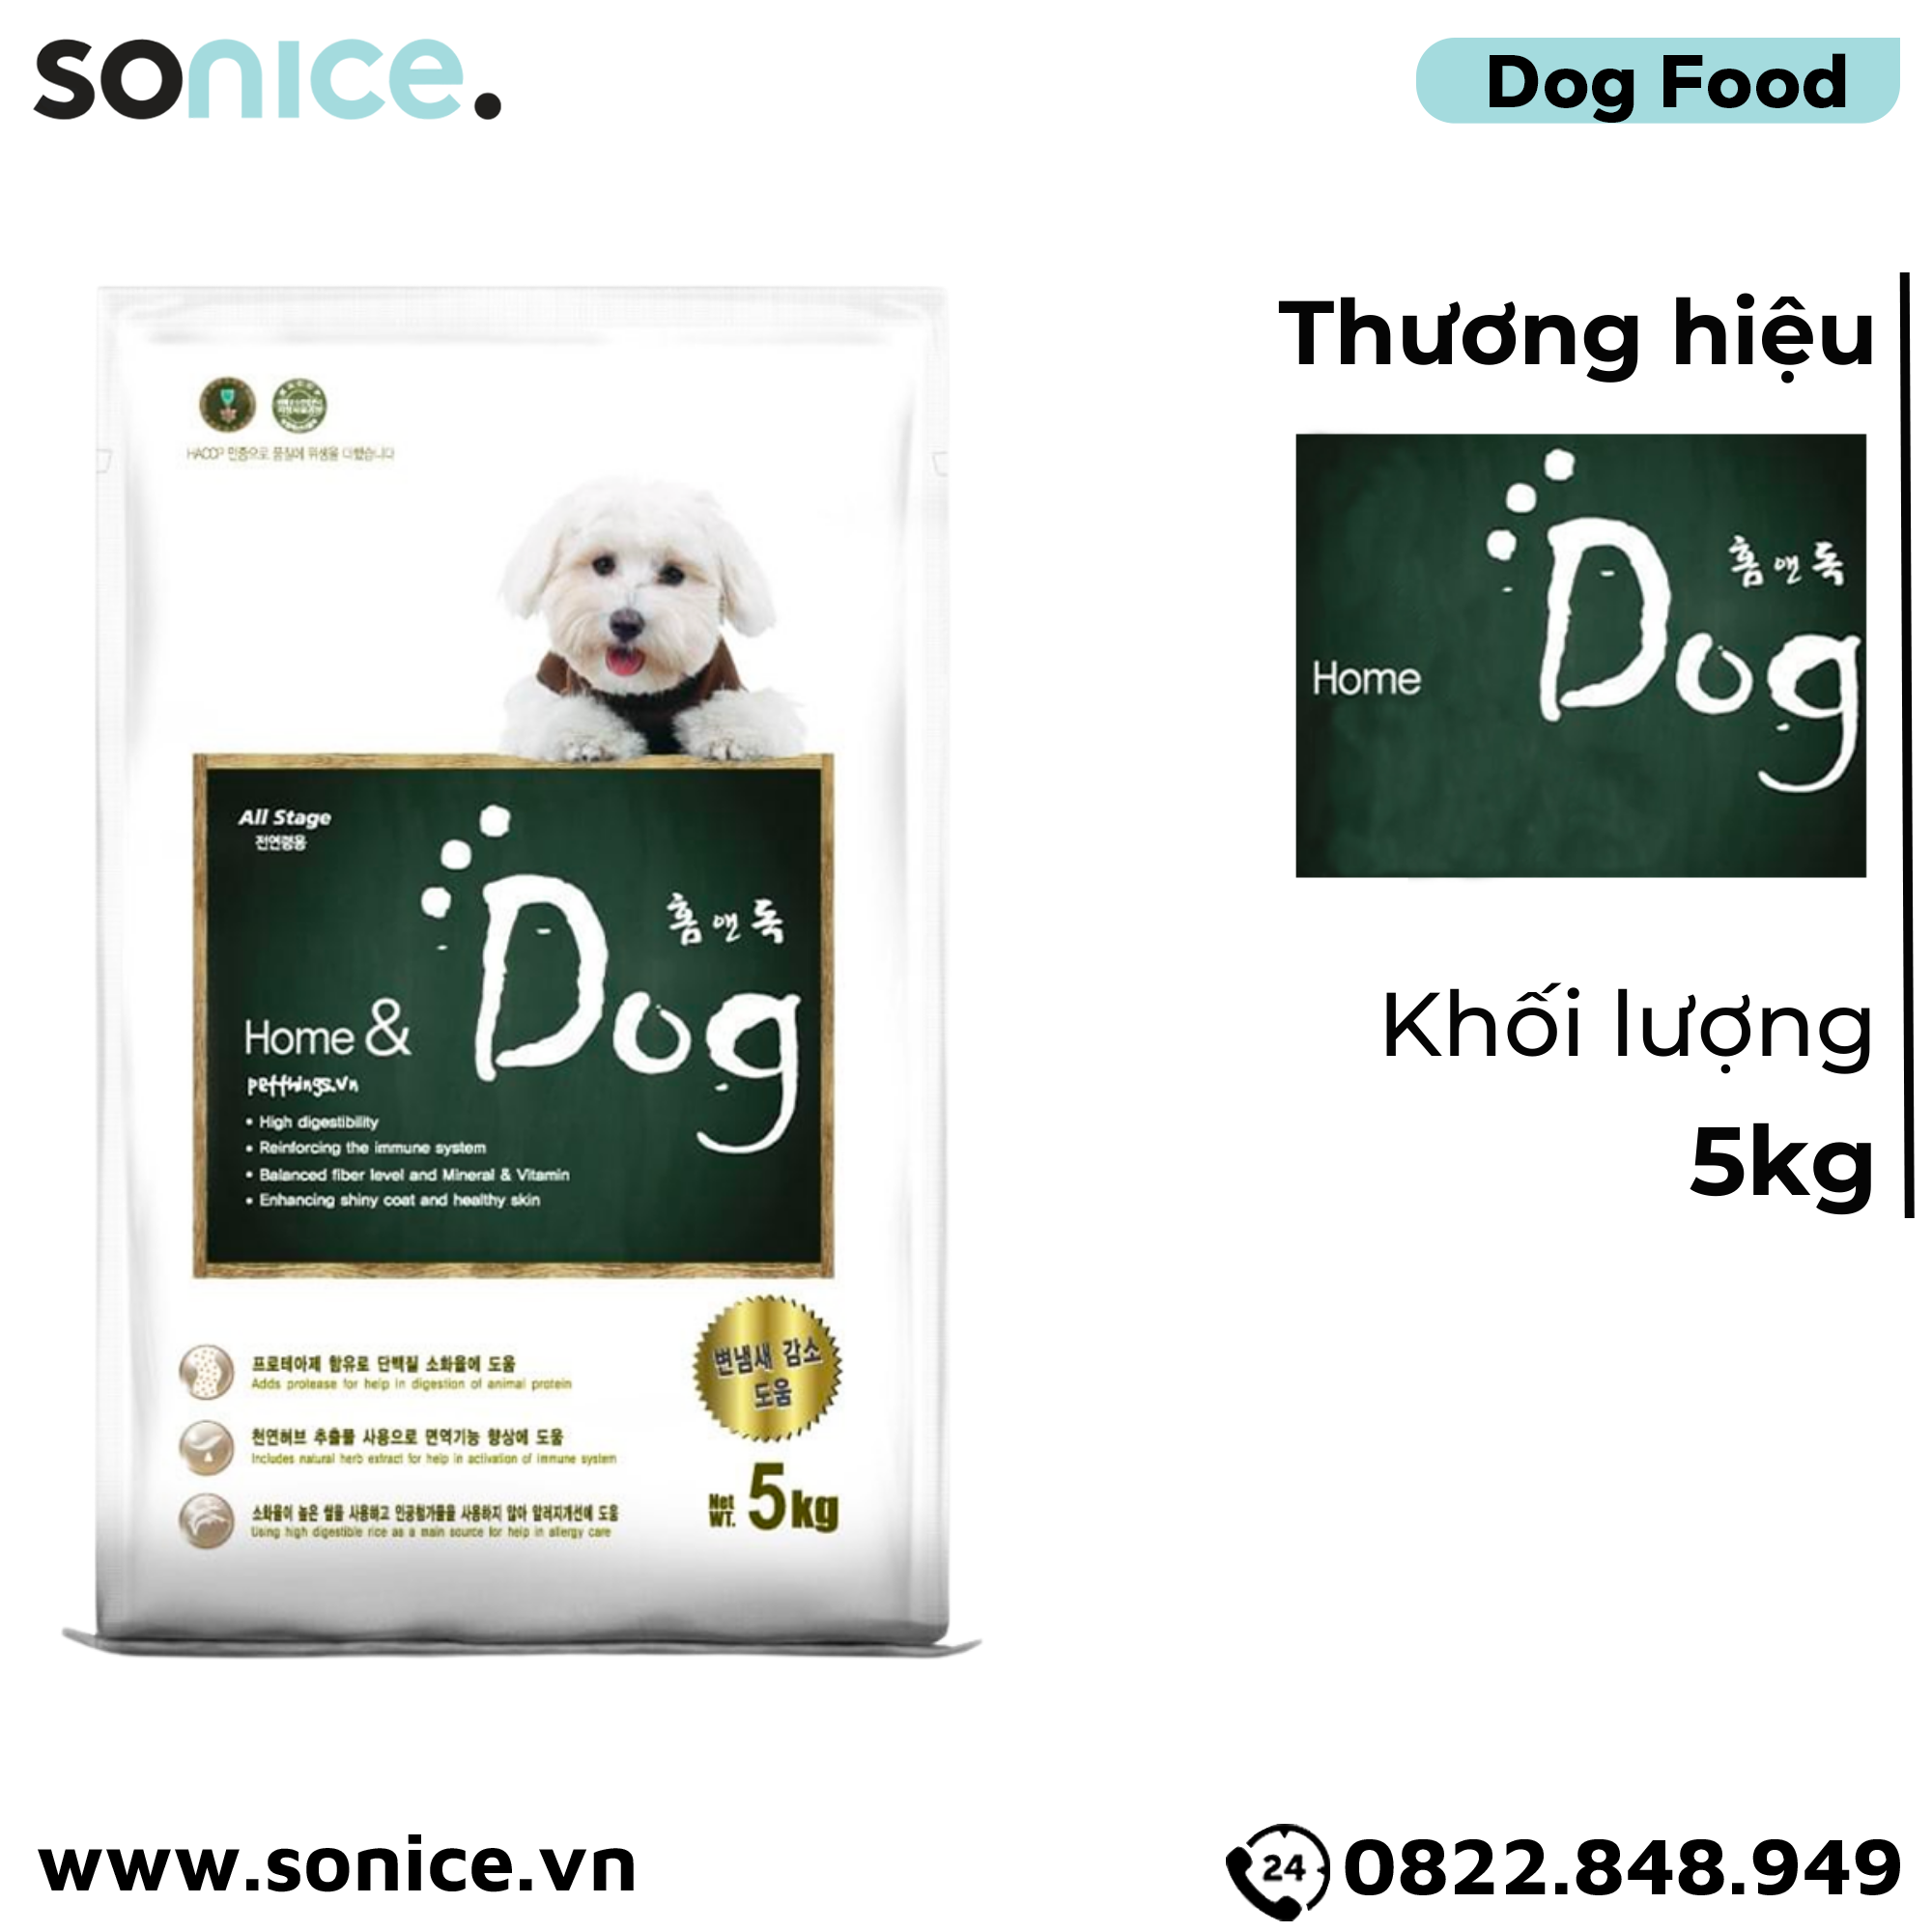  Thức ăn chó Home Dog 5kg - nhập Hàn Quốc SONICE. 